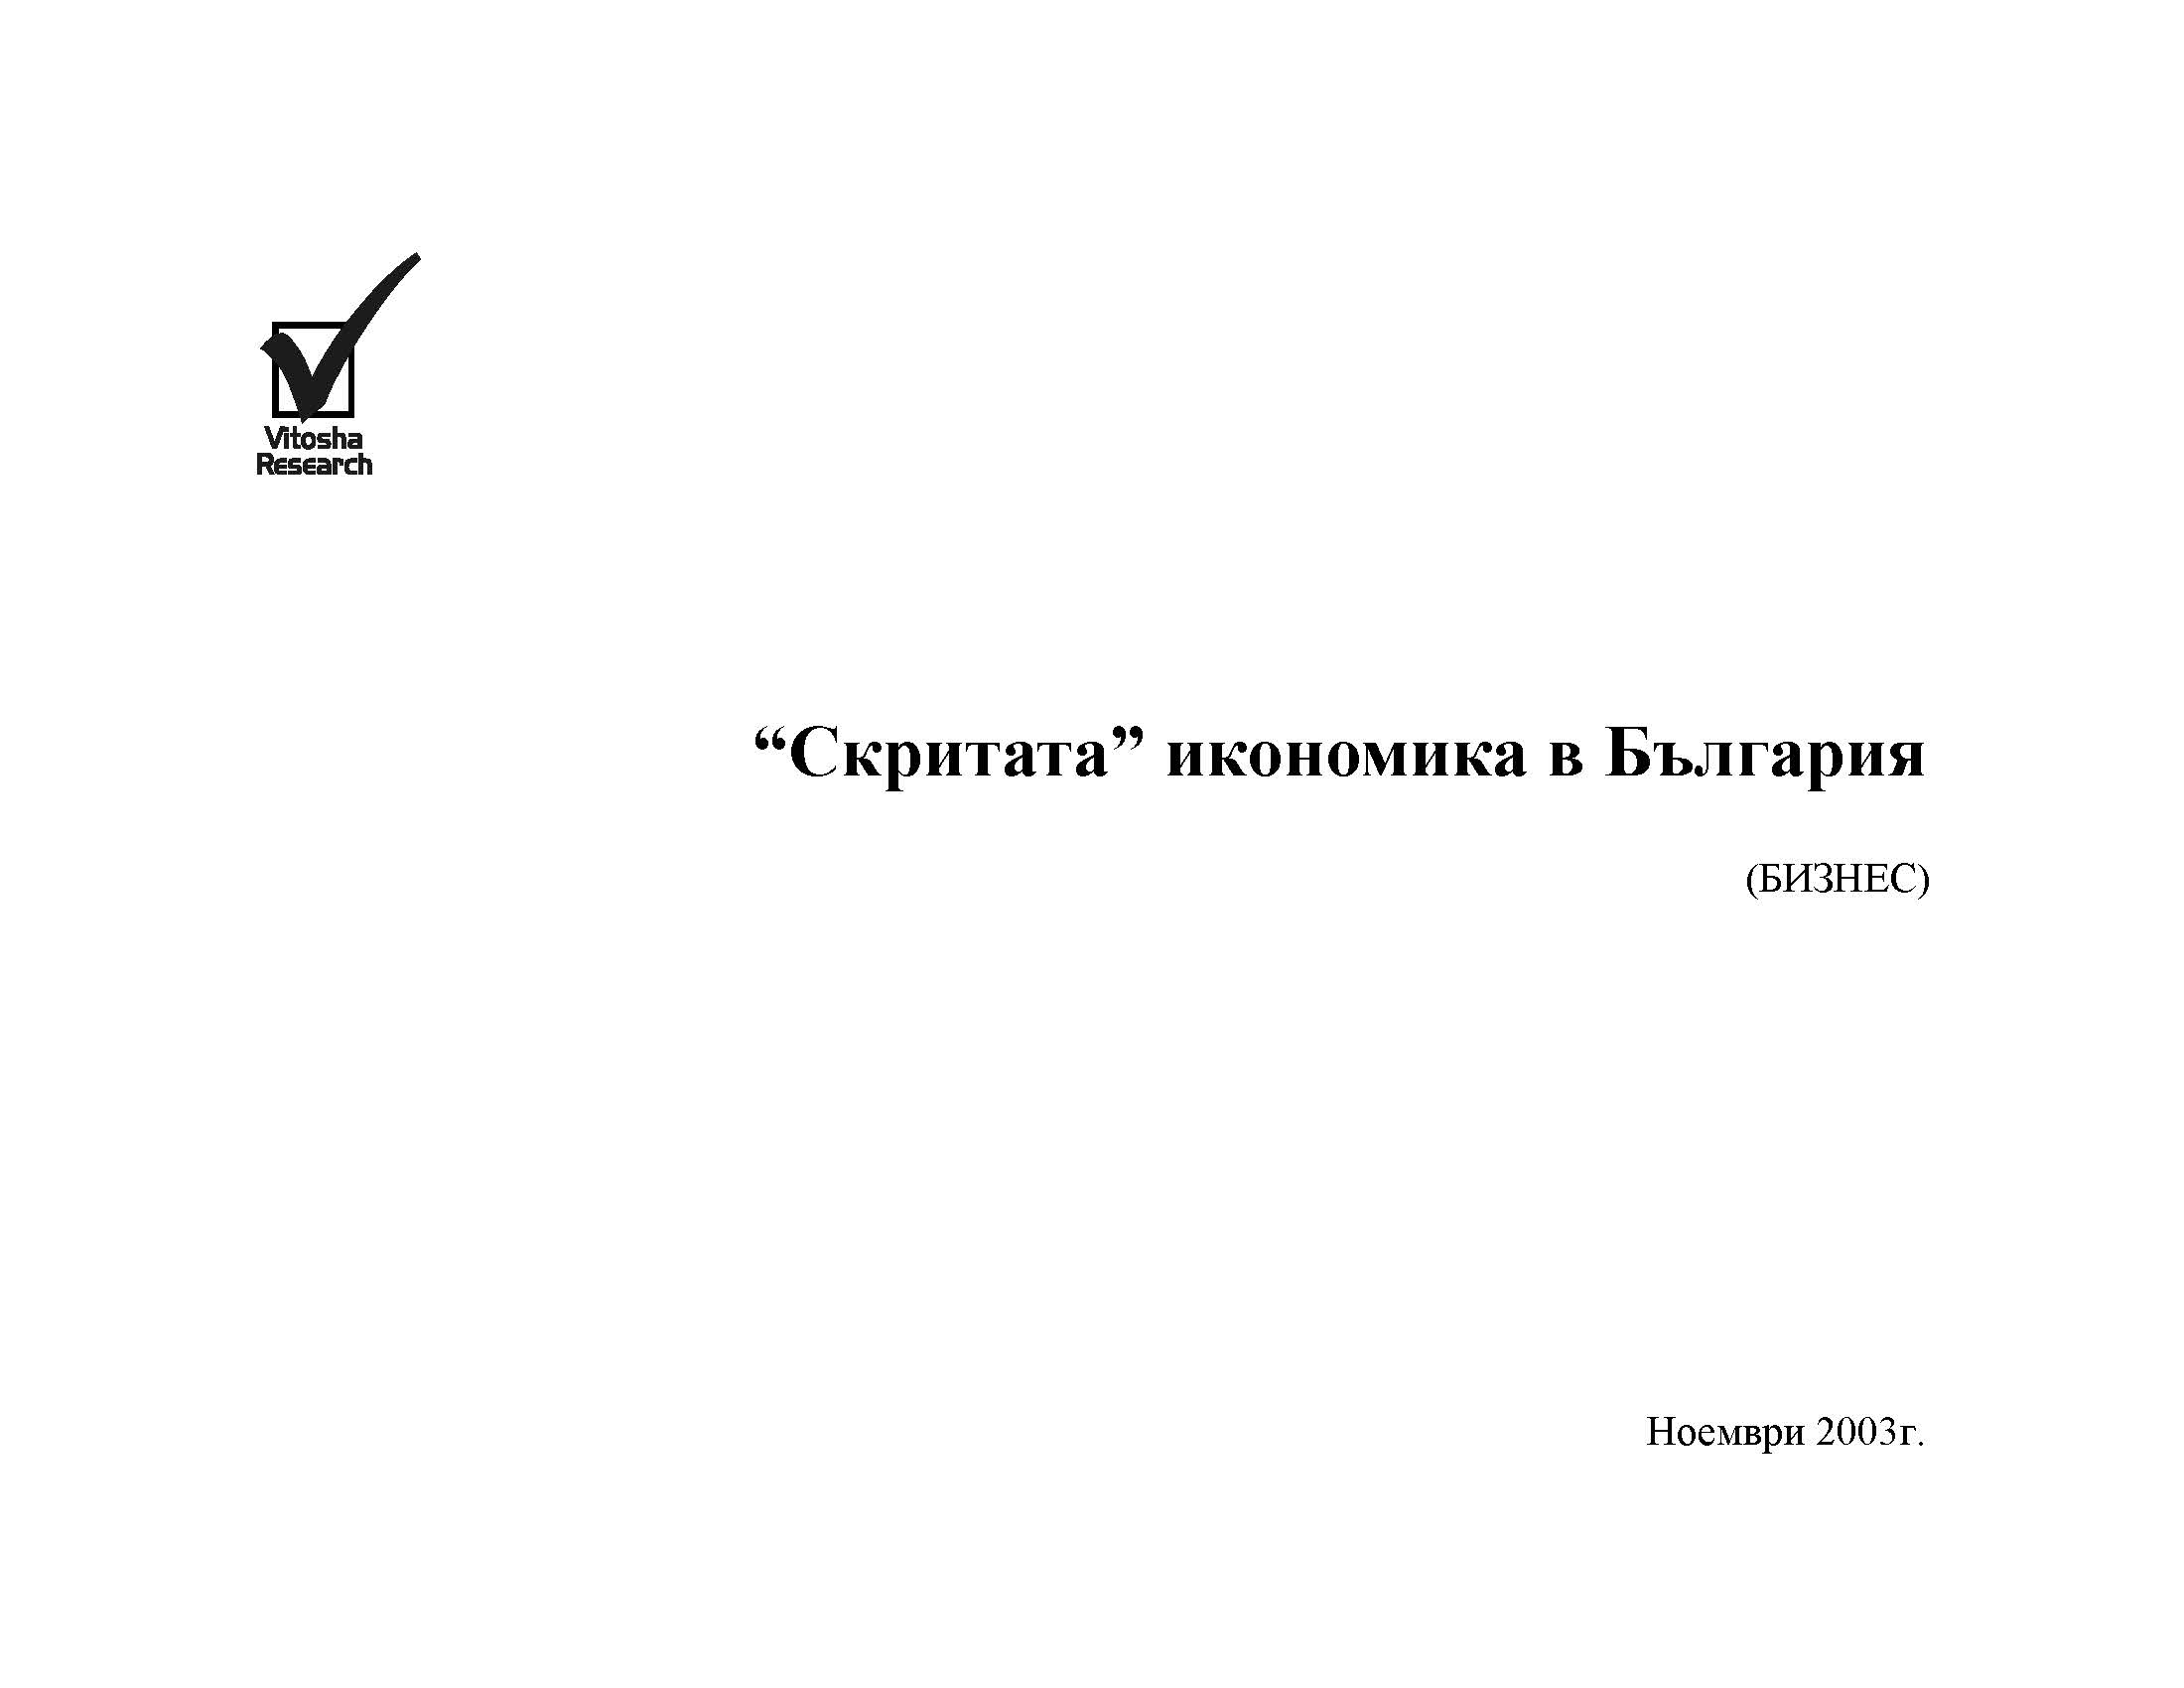 Скритата икономика в България (изследване на бизнес-сектора), Ноември 2003 г.